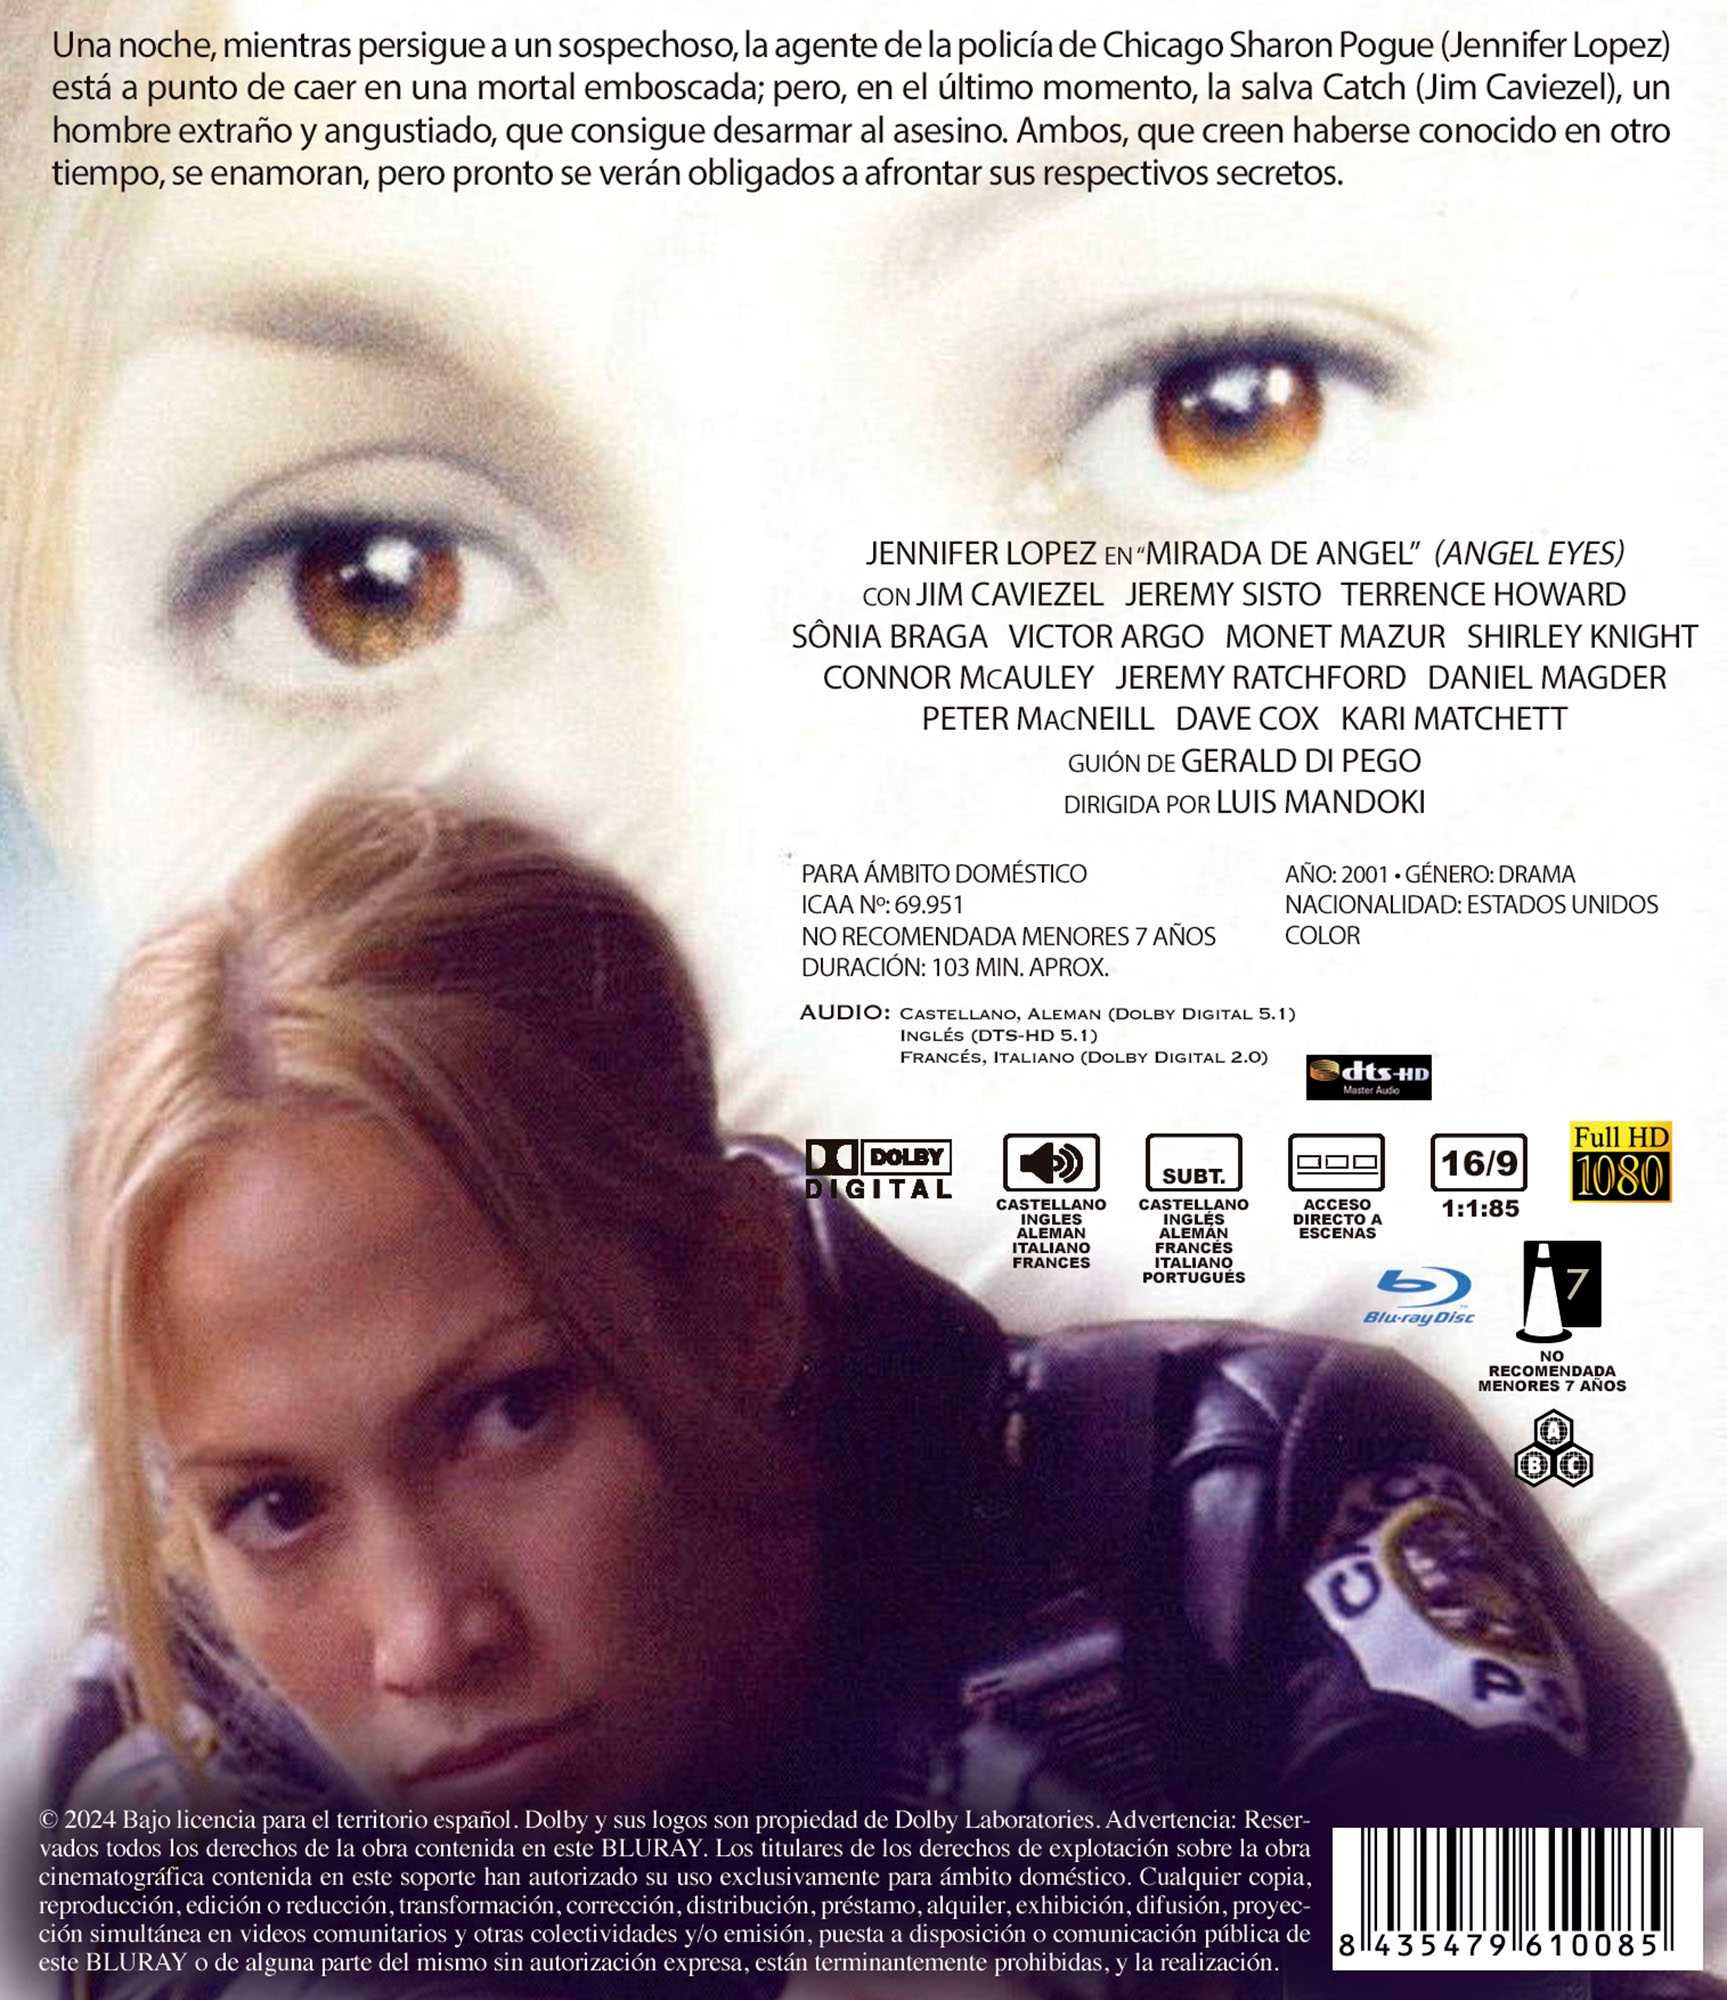 Mirada De Ángel/Olhos de Anjo (Blu-Ray)-Importado